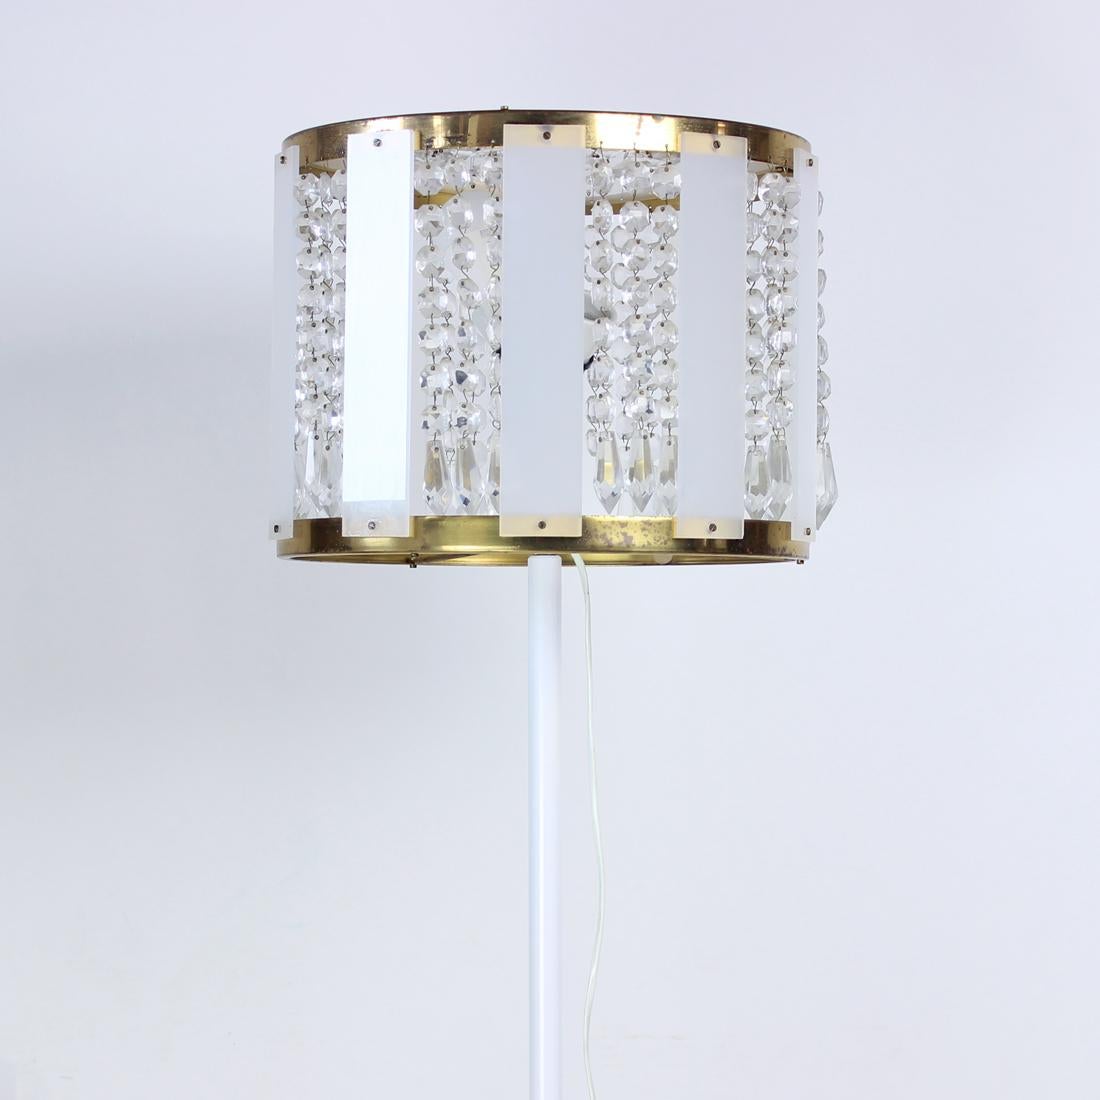 Schöne Vintage-Stehlampe. Produziert von der Firma Kamenicky Senov in den 1970er Jahren. Das Unternehmen hat sich auf geschliffenes Glas spezialisiert und kombiniert es mit neueren Materialien. Diese Lampen sind ein perfektes Beispiel für eine